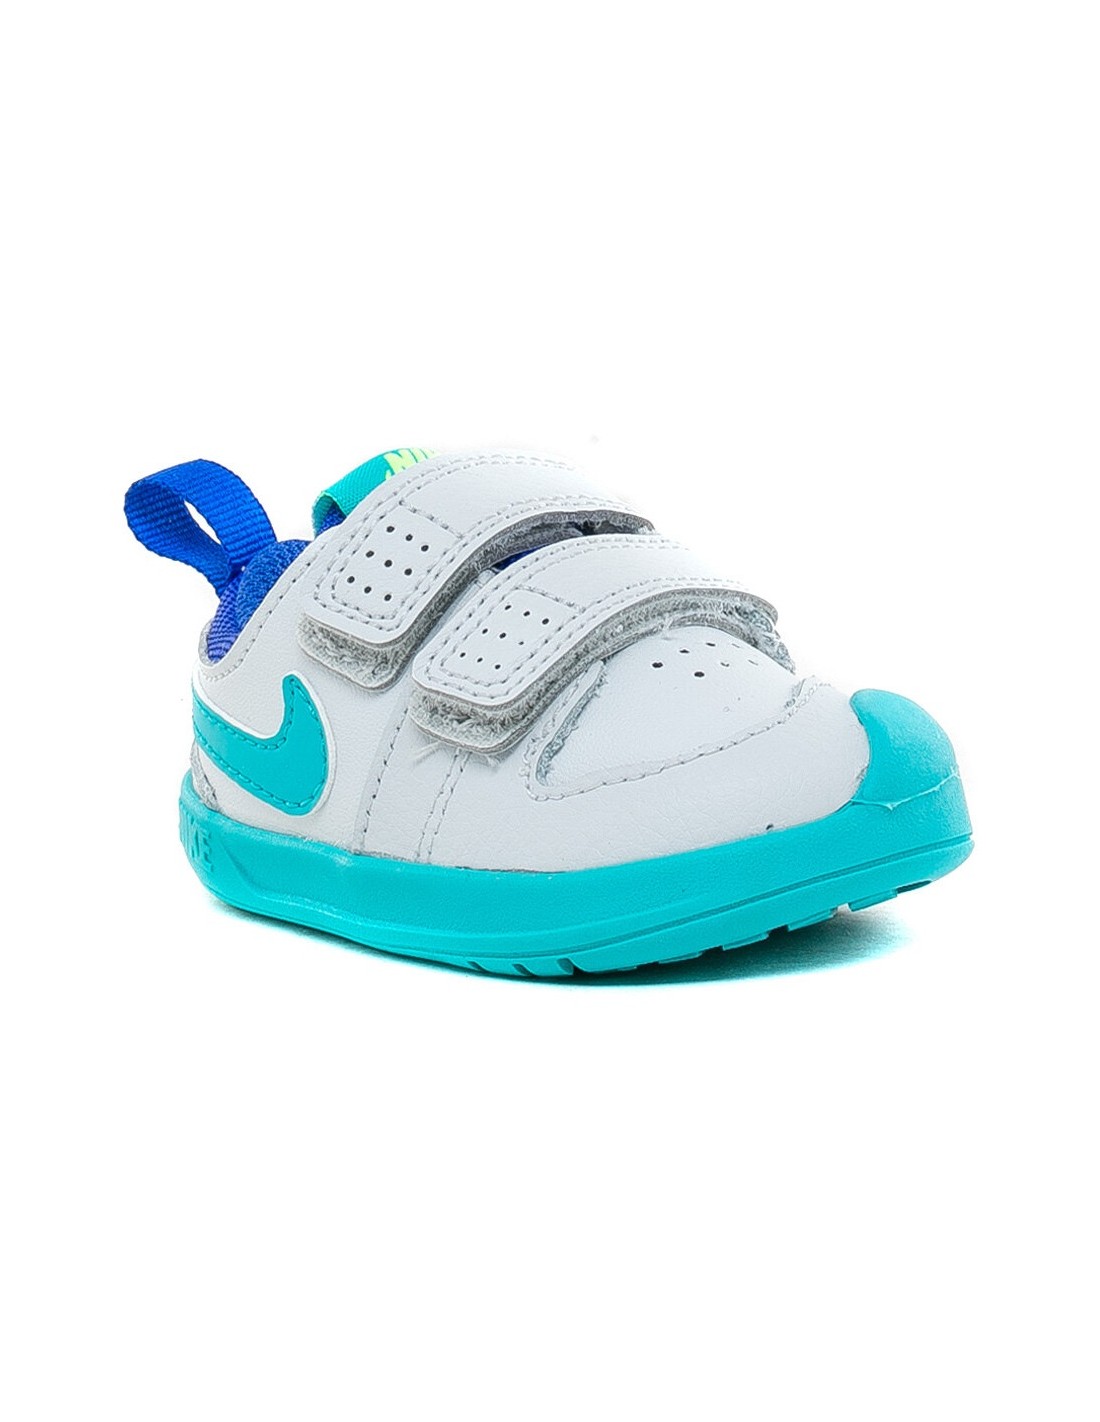 Zapatillas de bebé Nike Pico 5 TDV Ar4162-003 - 6 cuotas en OndaSports جوازات سكاكا